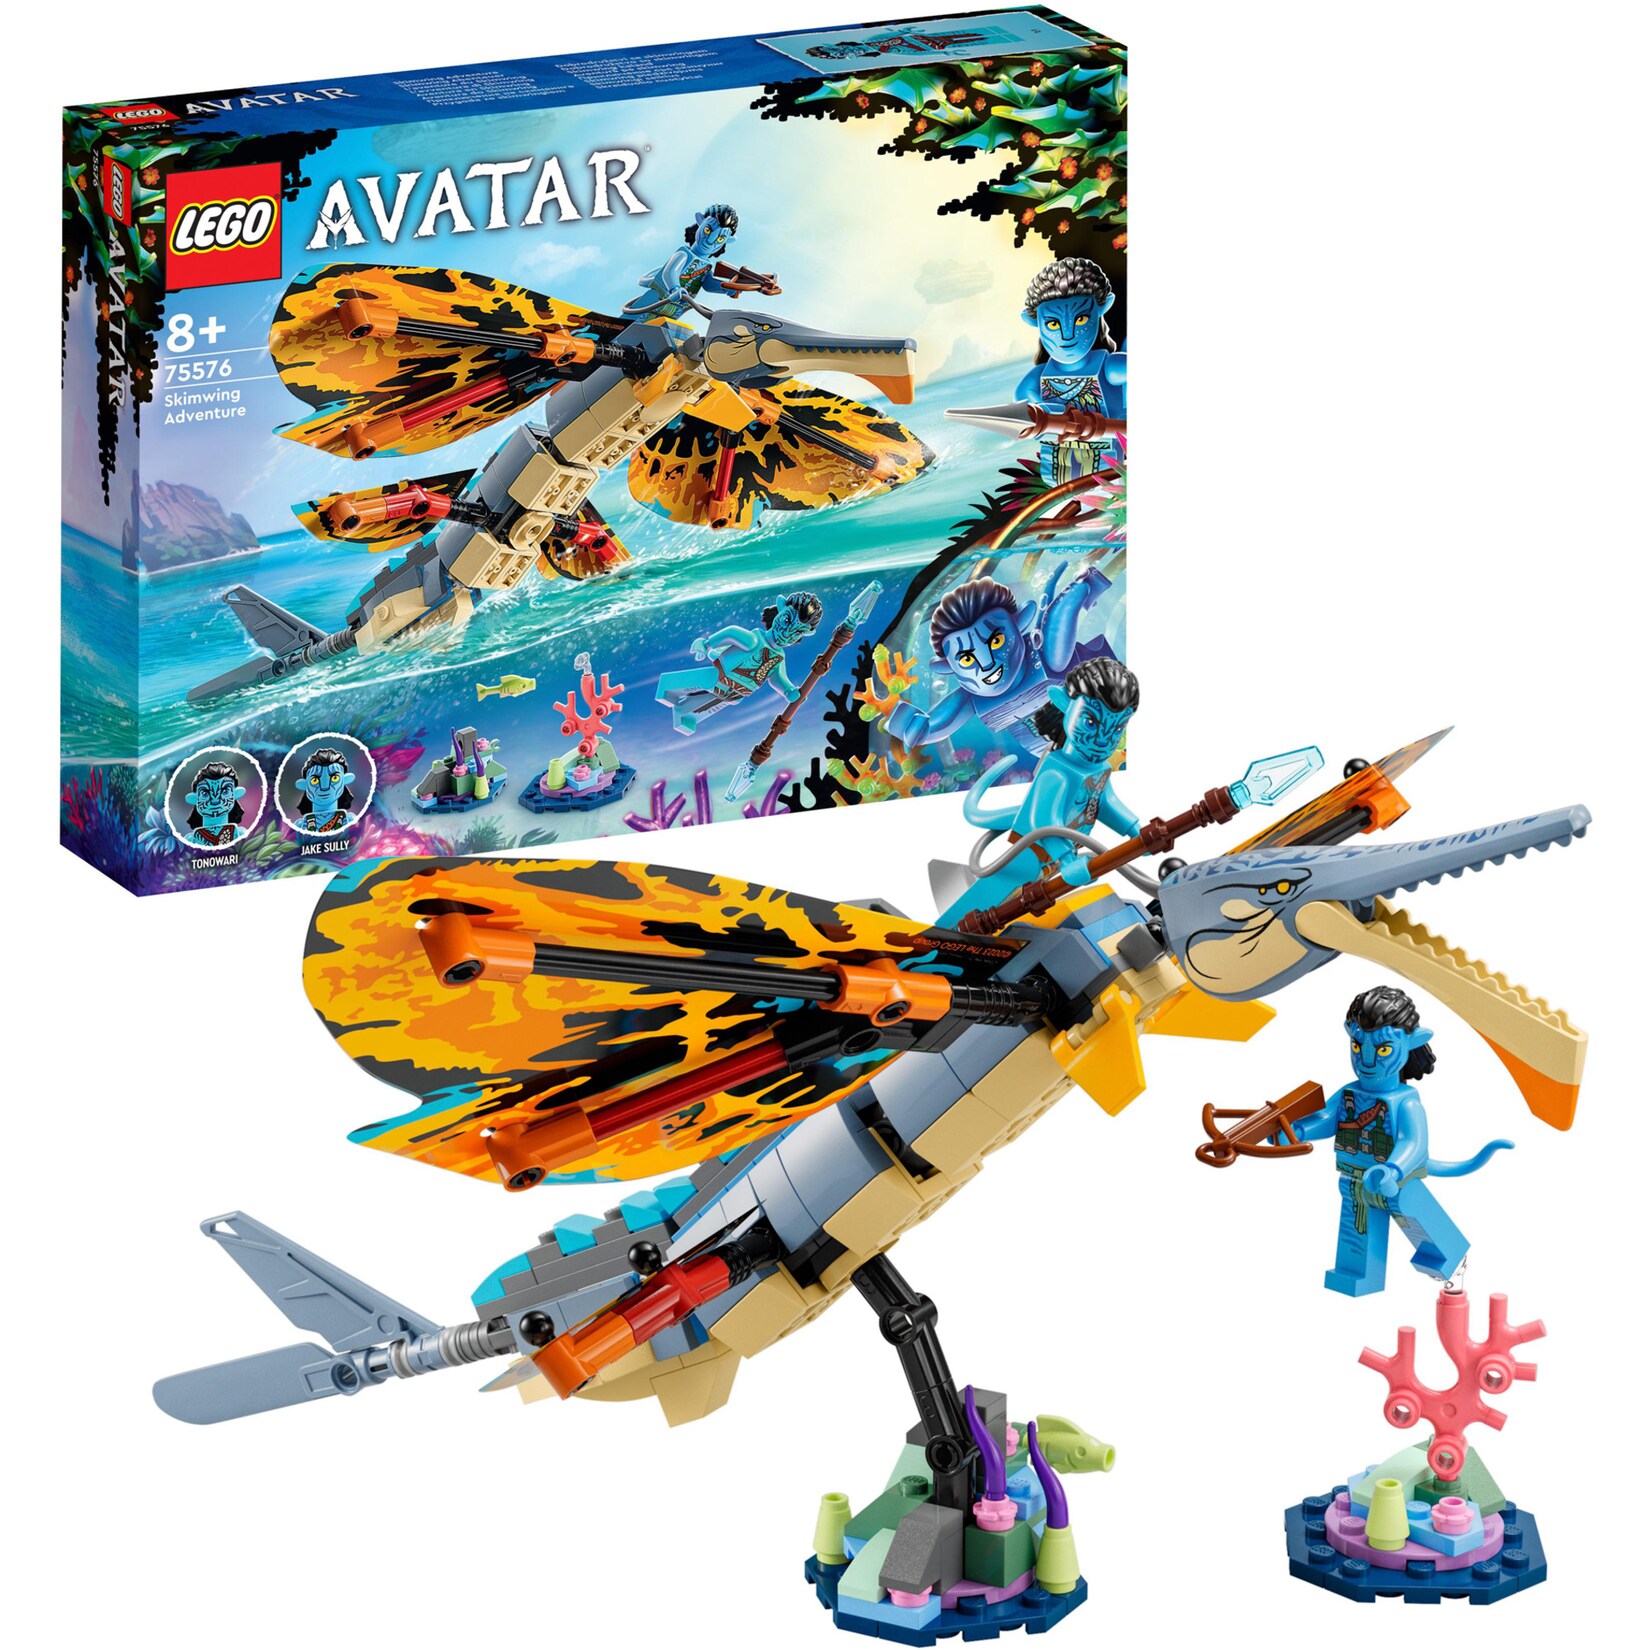 LEGO Konstruktionsspielzeug Avatar Skimwing Abenteuer